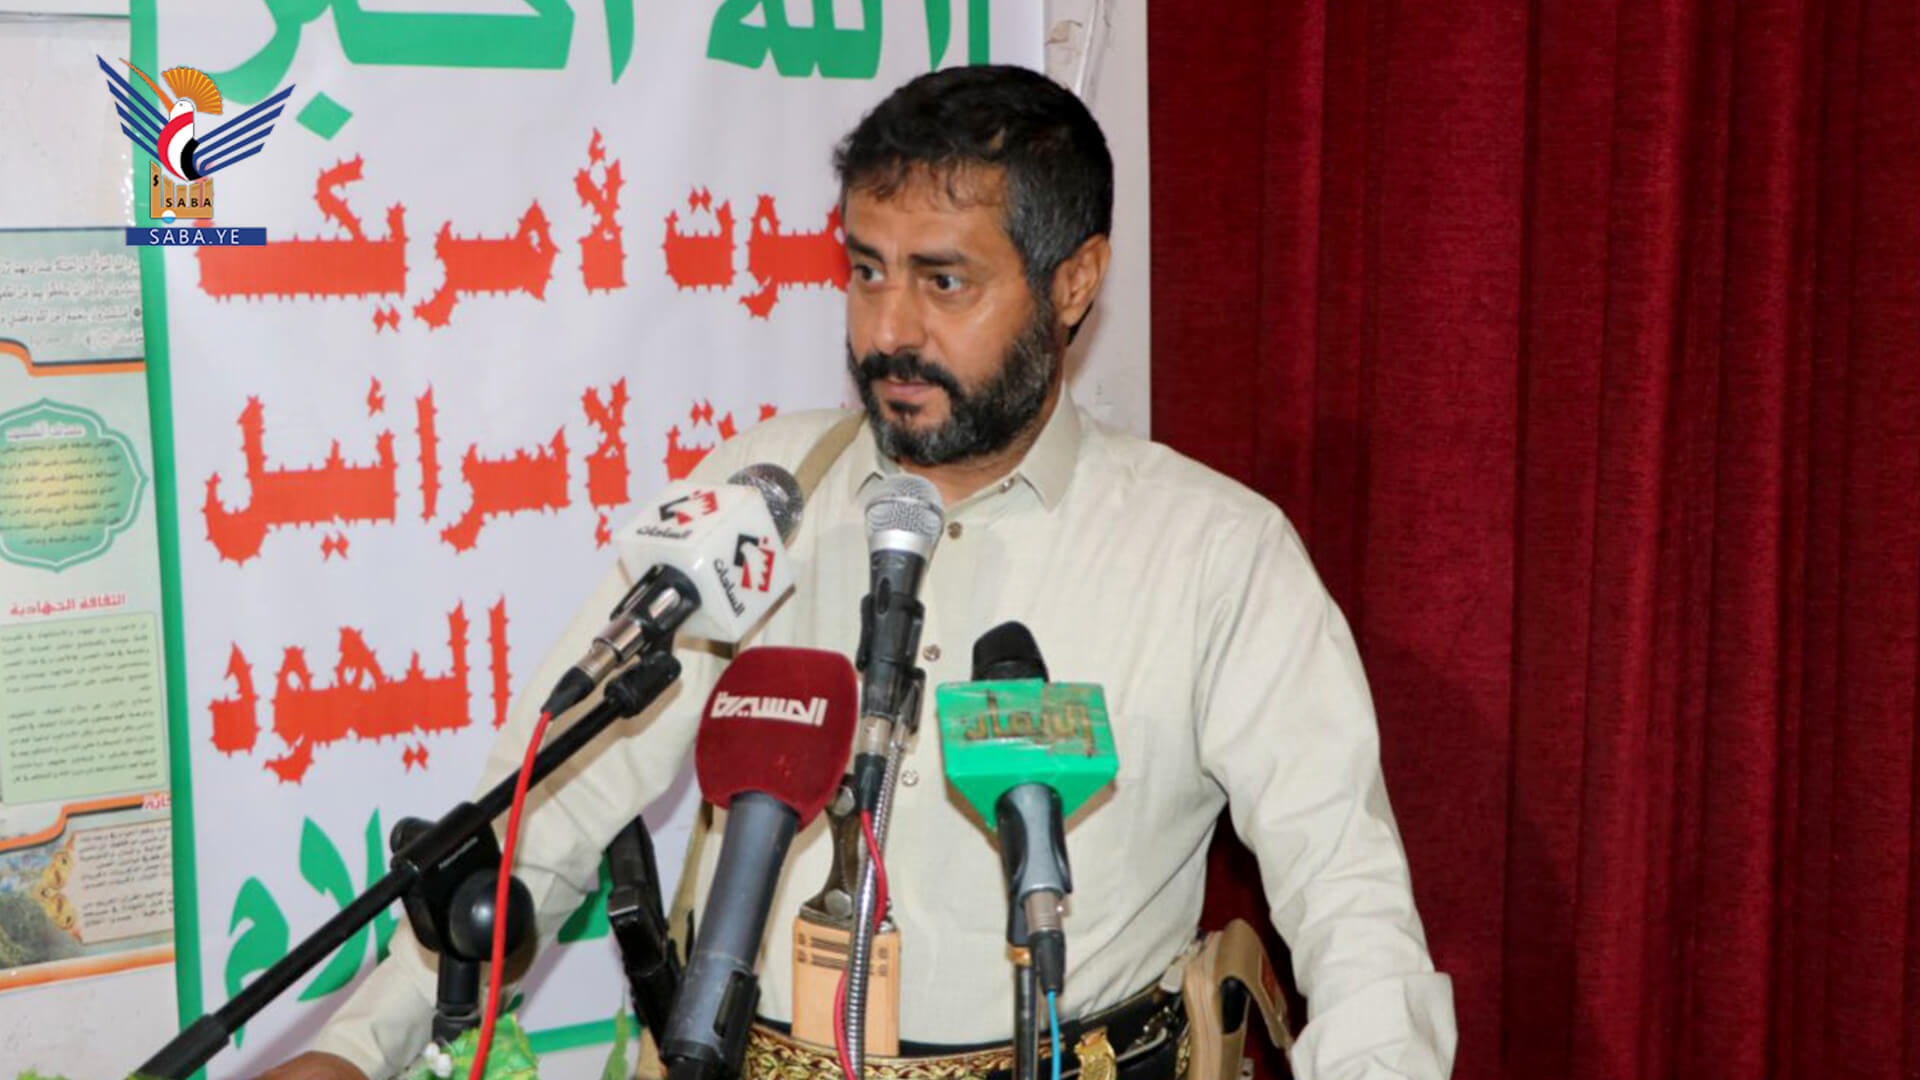 أنصار الله الحوثيين اليمنية تعرض مجددا استضافة المكتب السياسي لـحماس